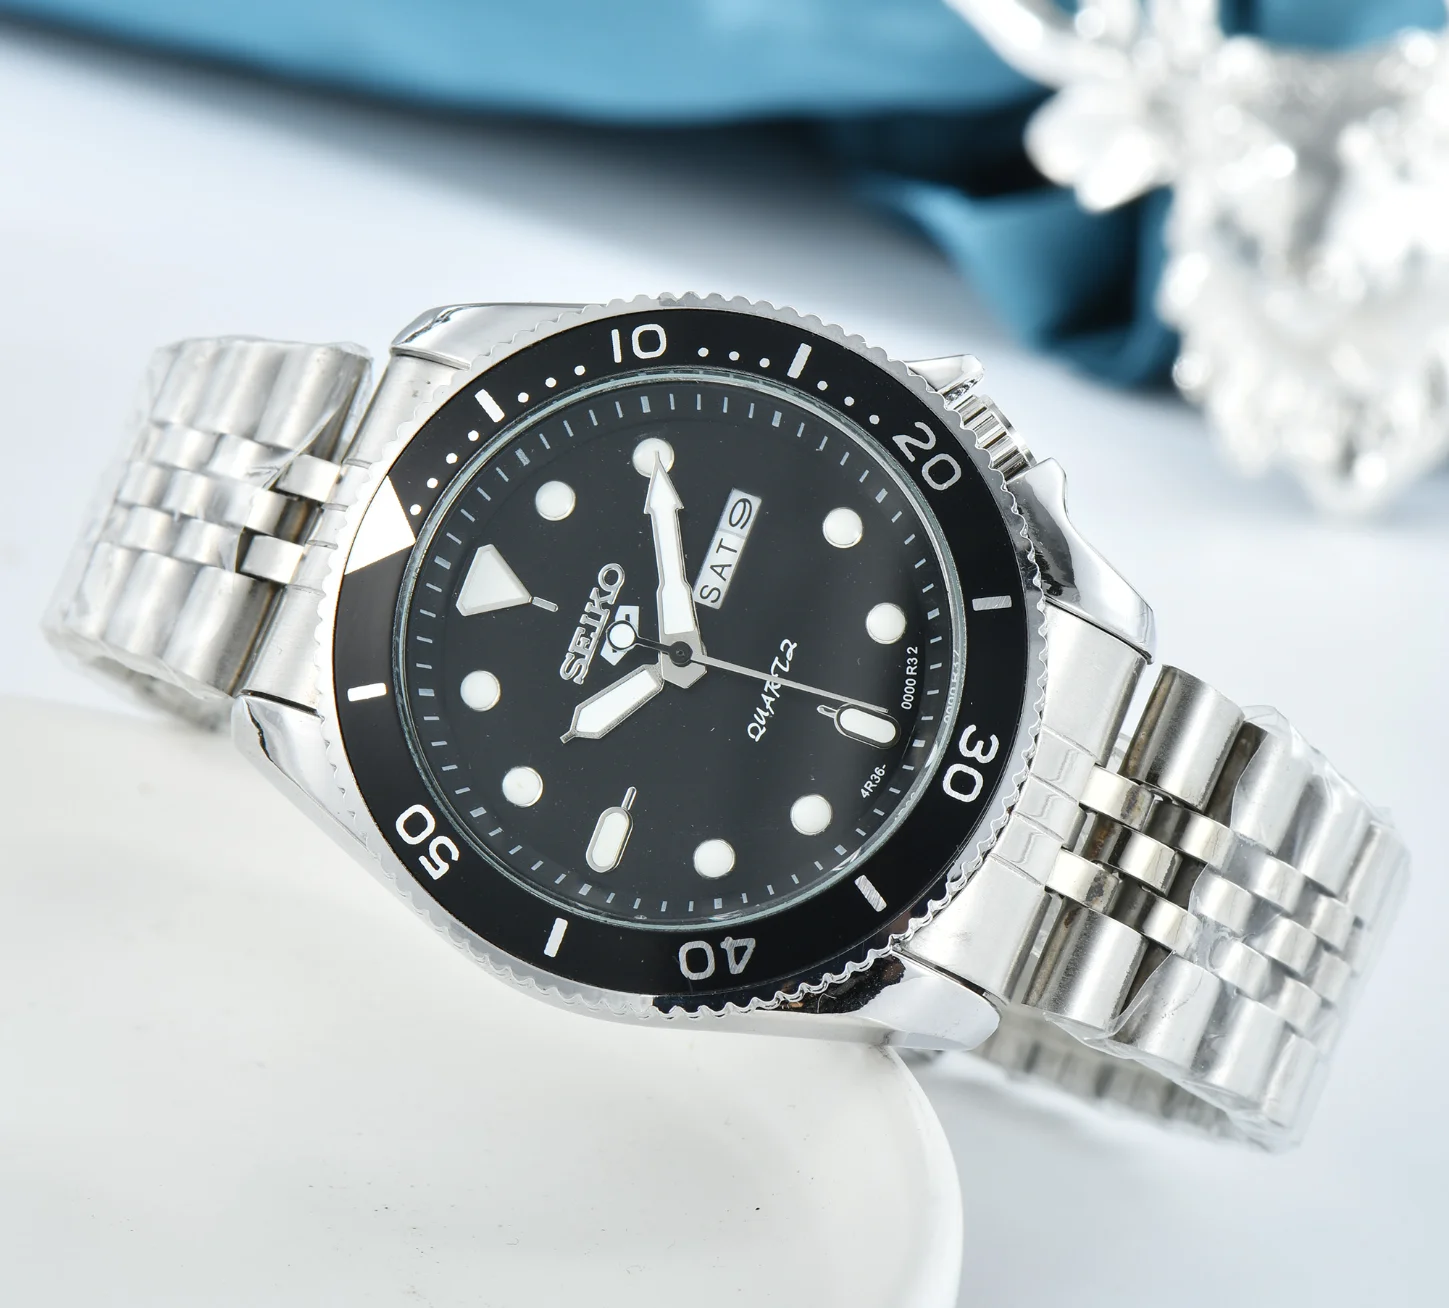 

Часы Seiko мужские кварцевые, роскошные брендовые модные спортивные водонепроницаемые наручные, с браслетом из нержавеющей стали, с изображе...